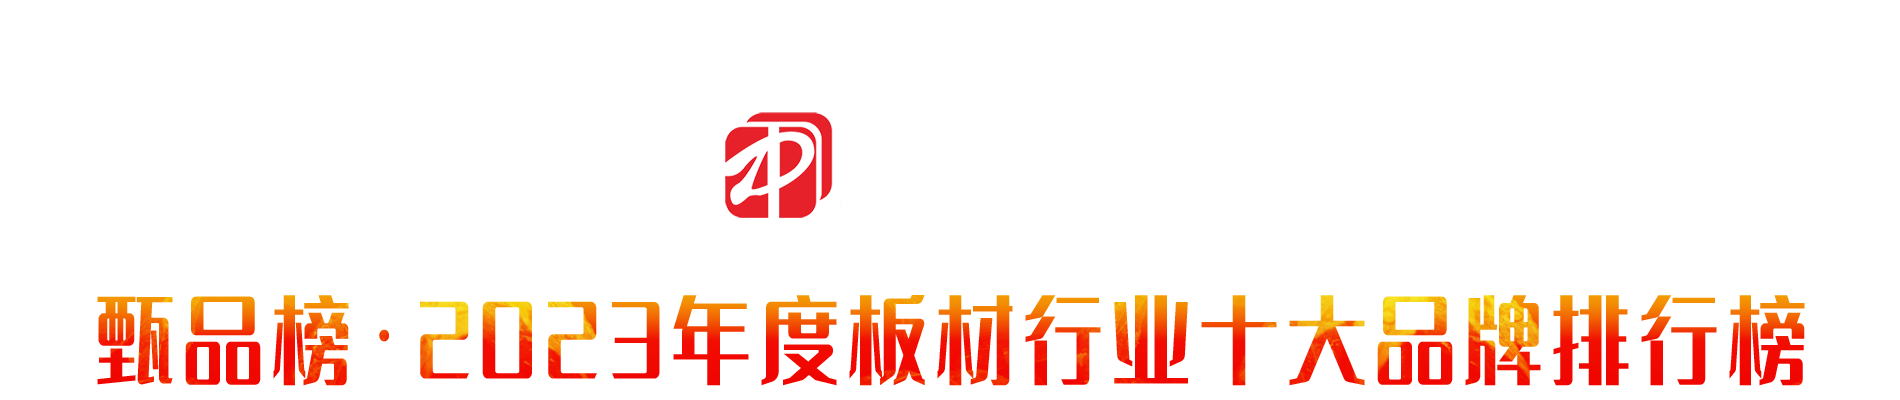 甄品榜 | 2023年中国板材行业品牌网络评选活动